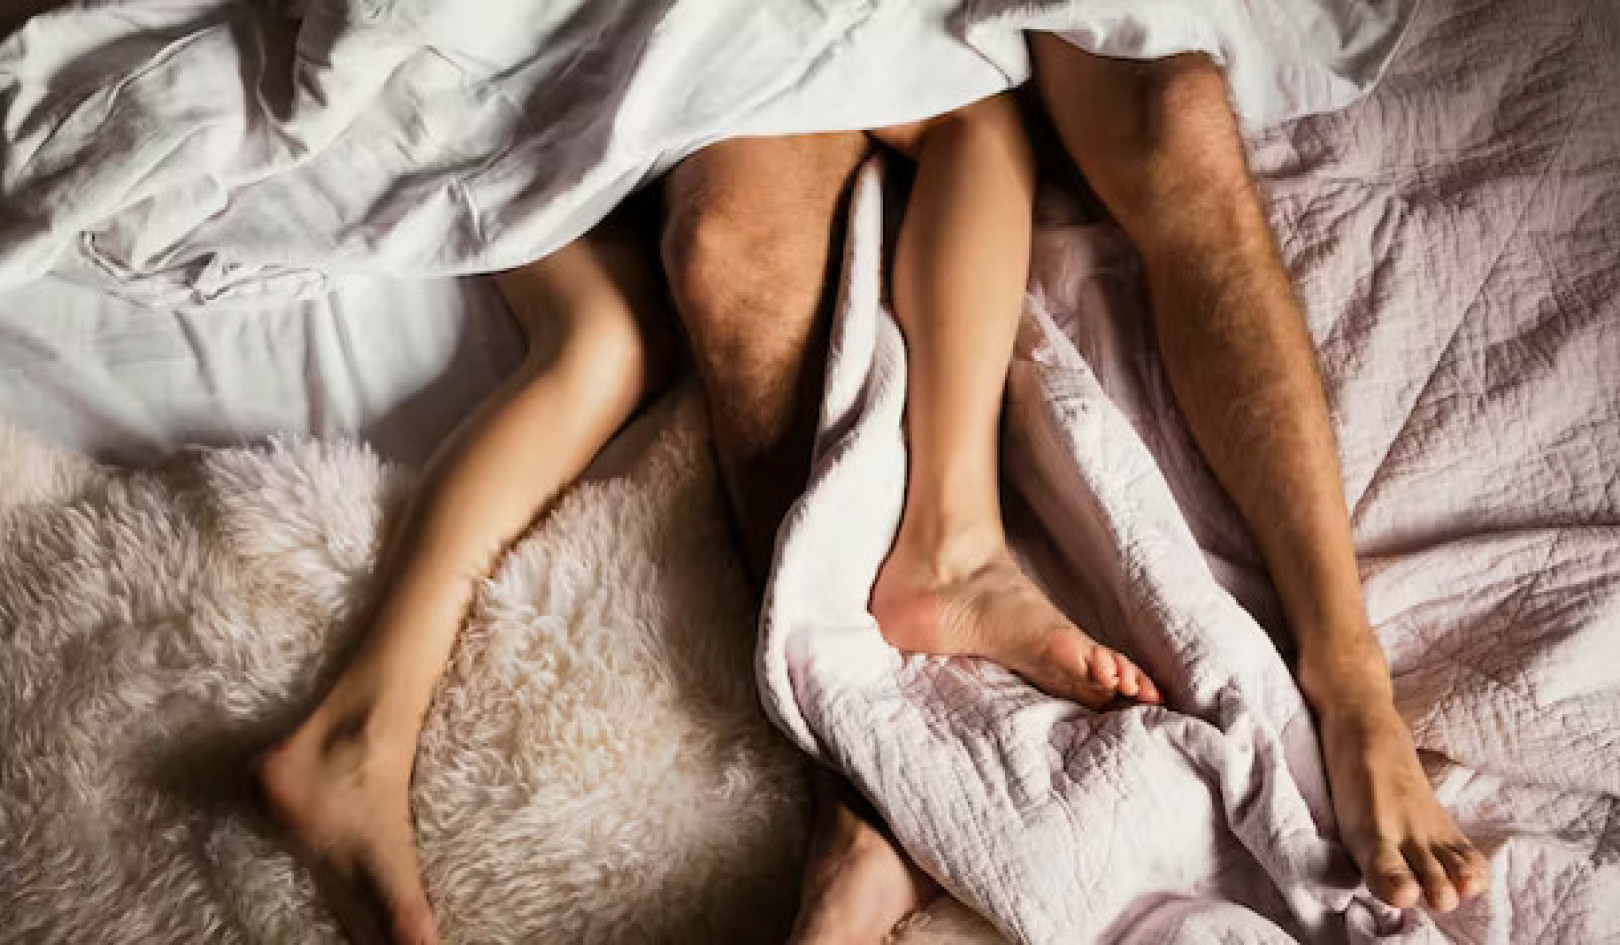 Oorbrug die orgasme-gaping: die realiteite van vroulike plesier in intimiteit